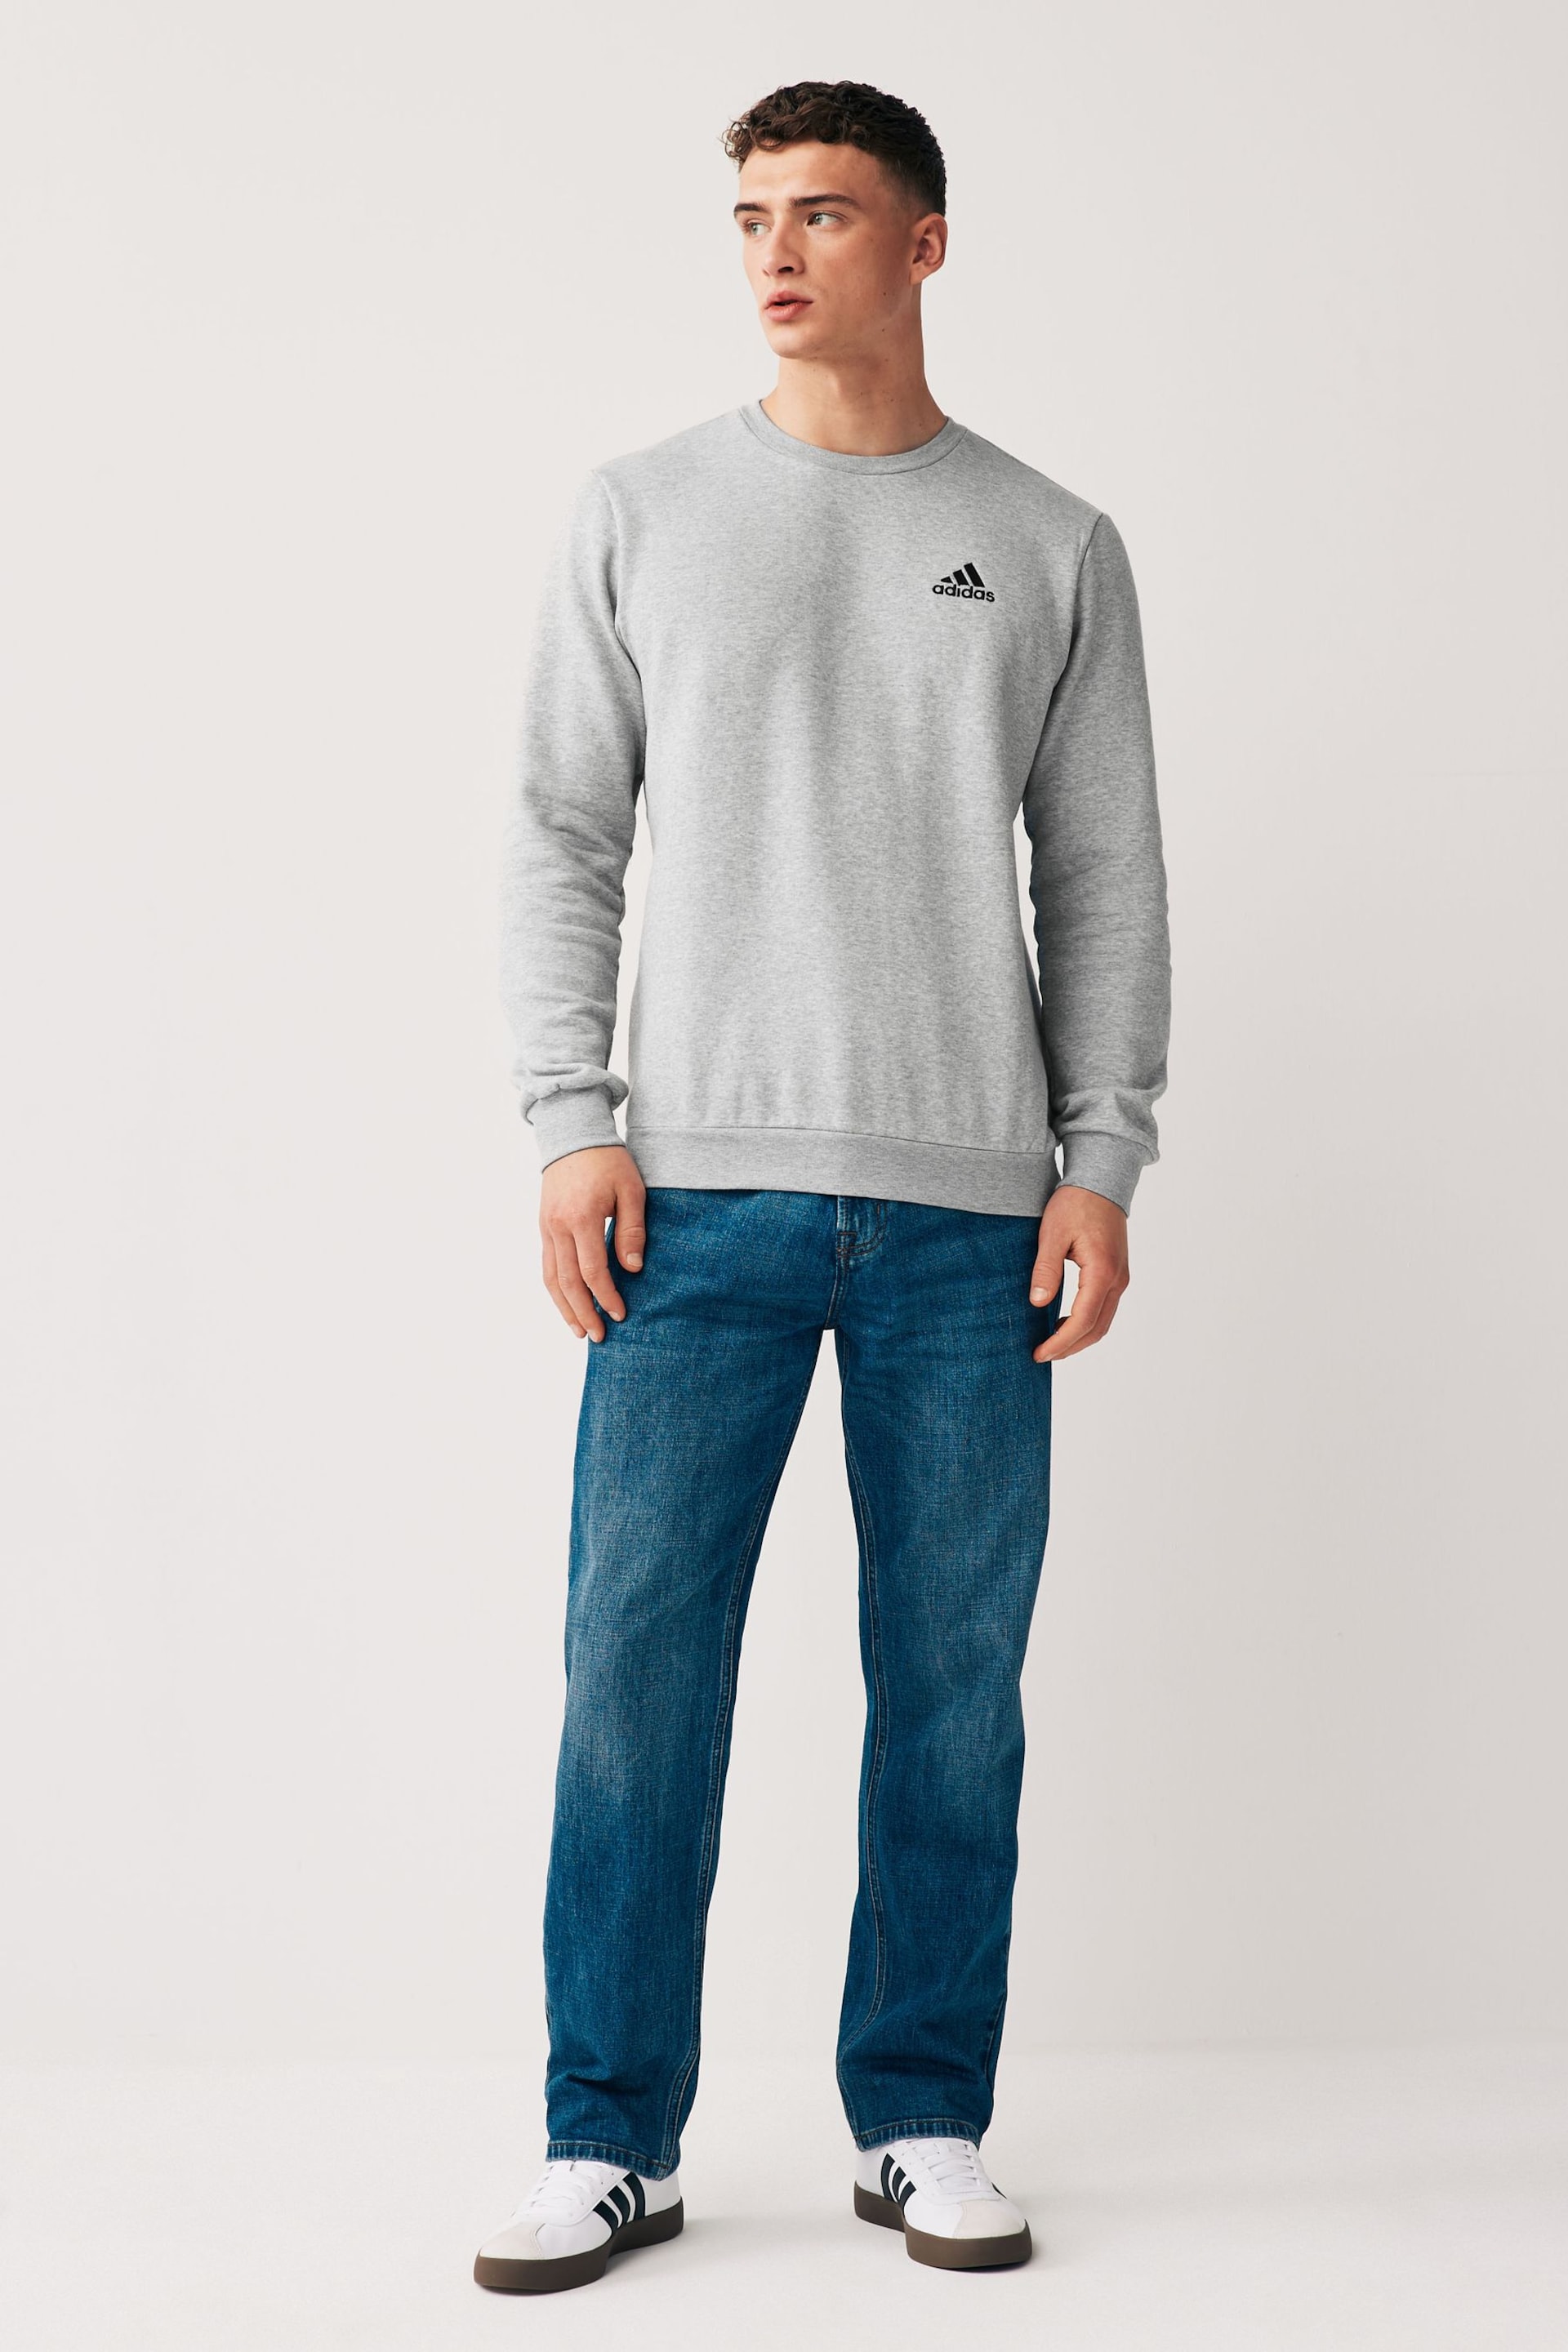 adidas Grey Feelcozy Sweatshirt - Image 2 of 5